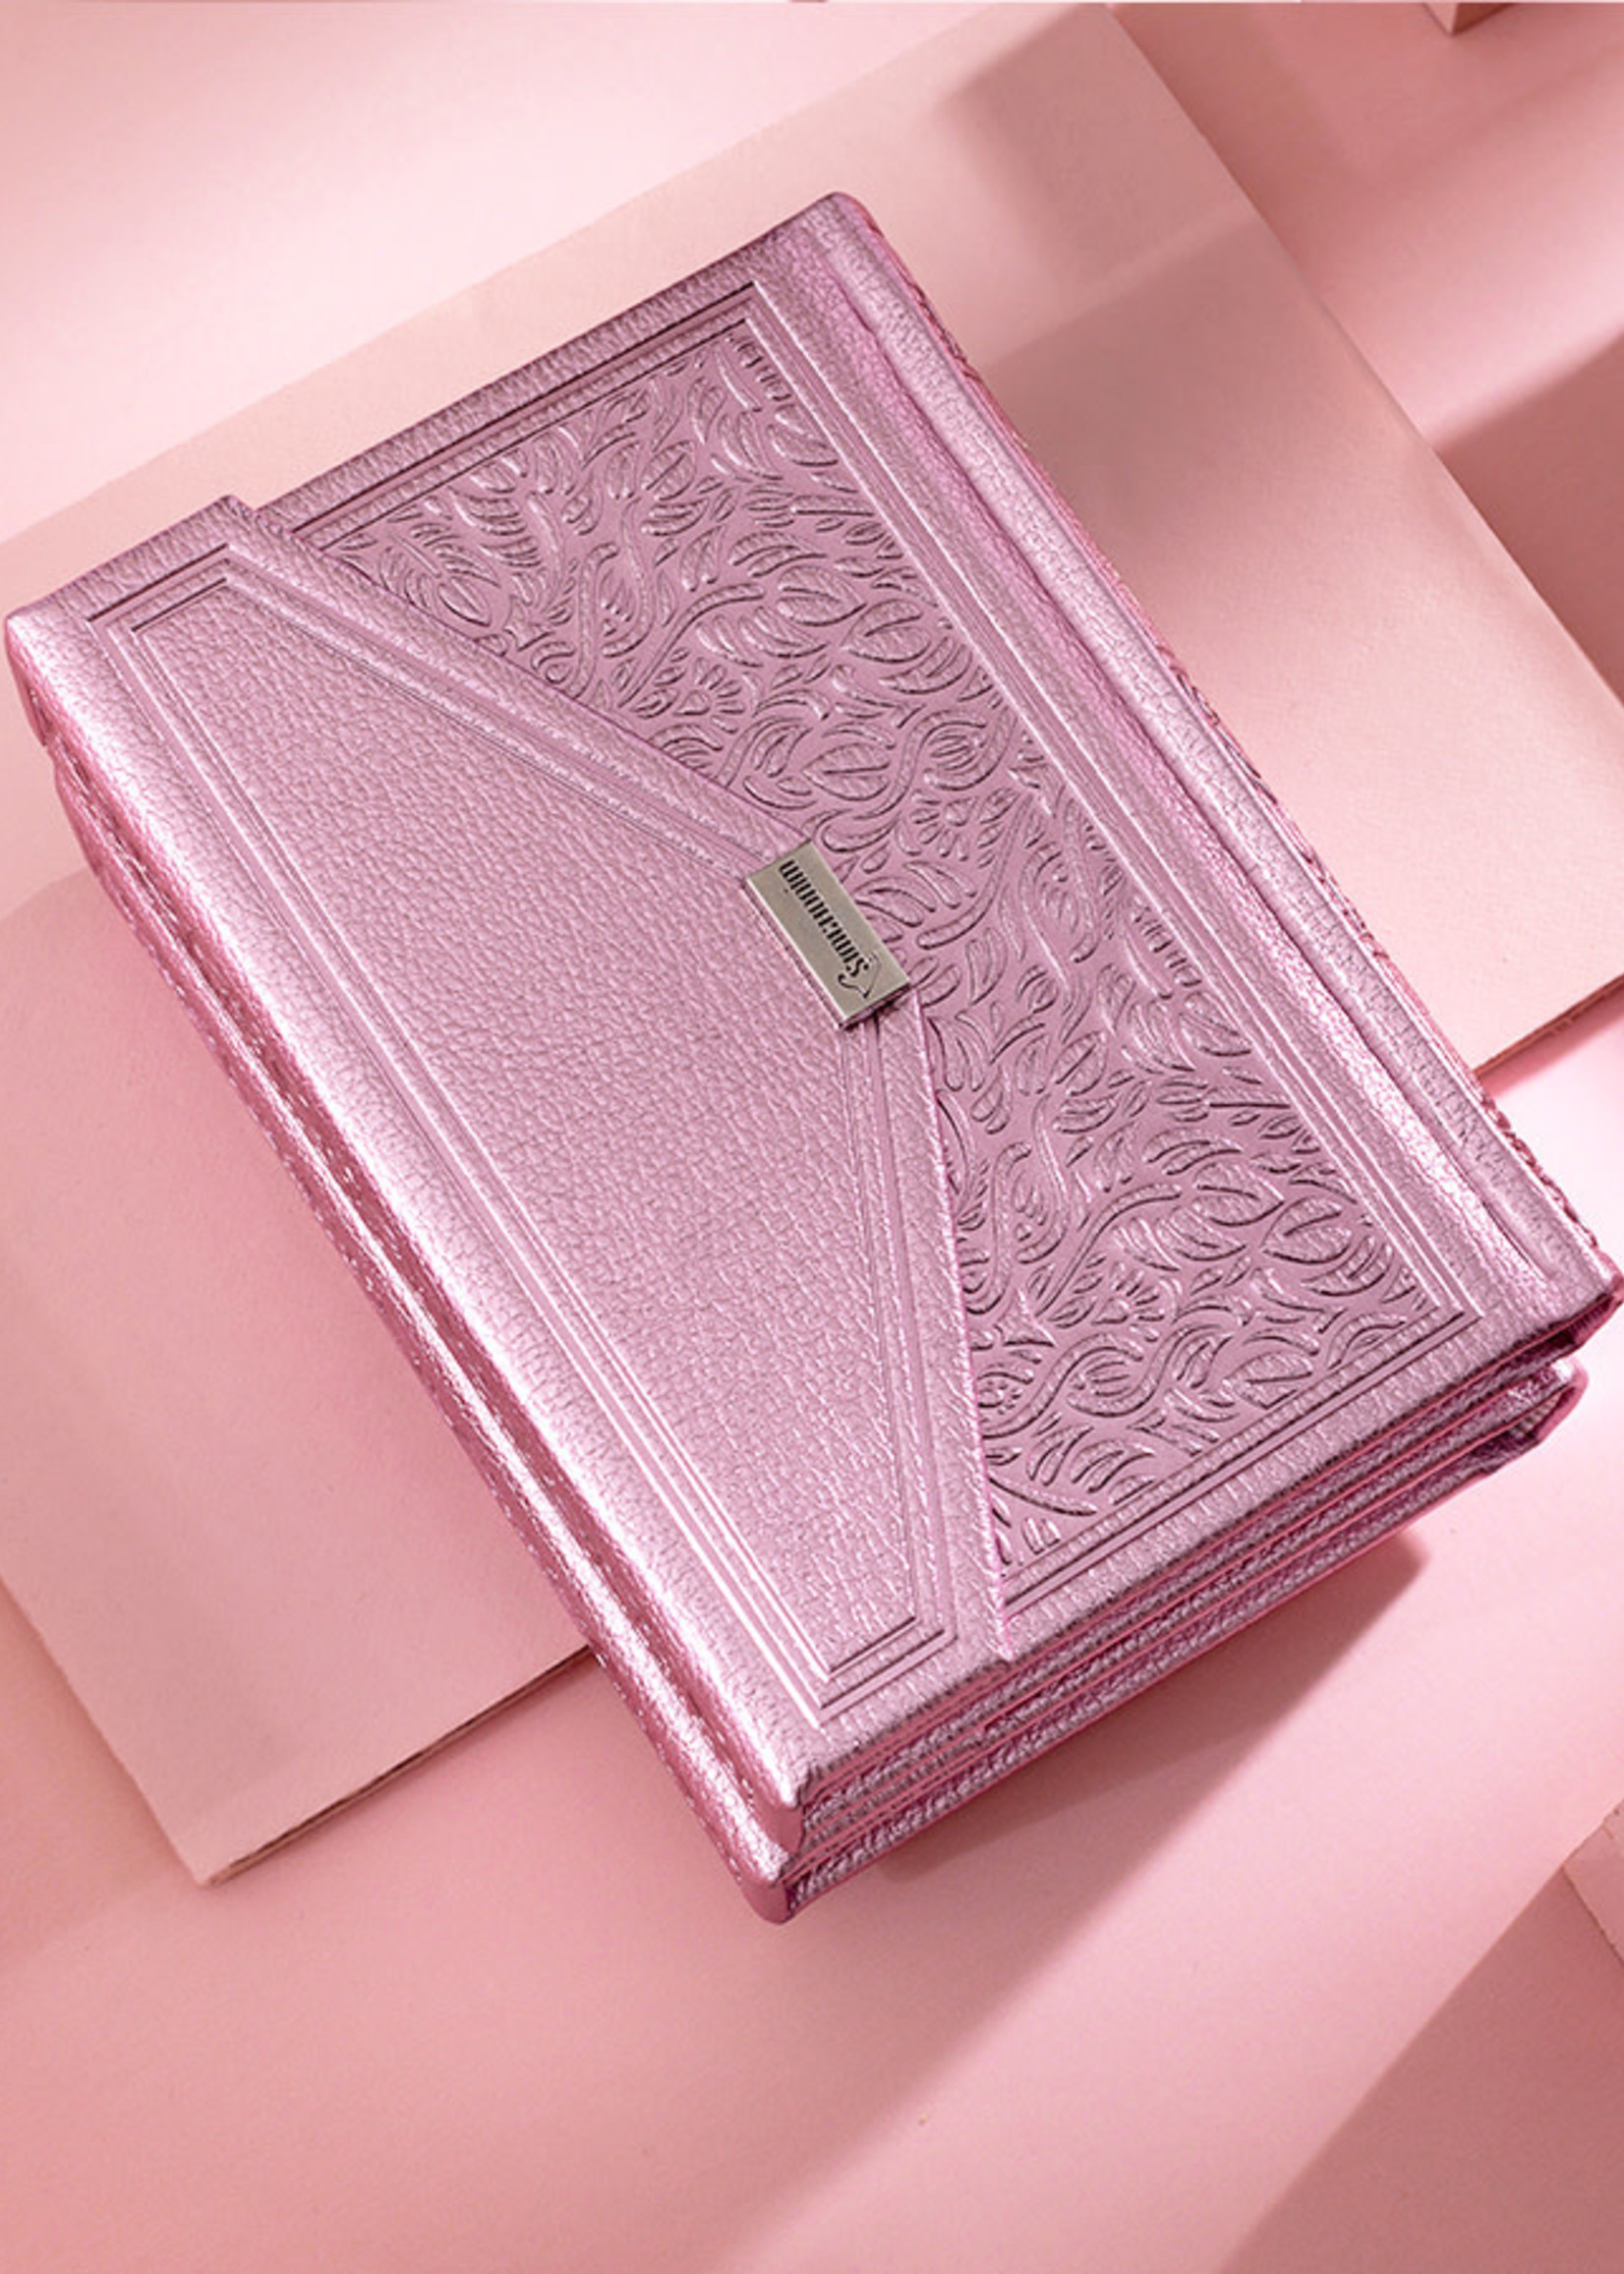 Simchonim /  שמחונים Siddur Envelope Style - Metallic  Pink Ashkenaz/  סידור שמחונים